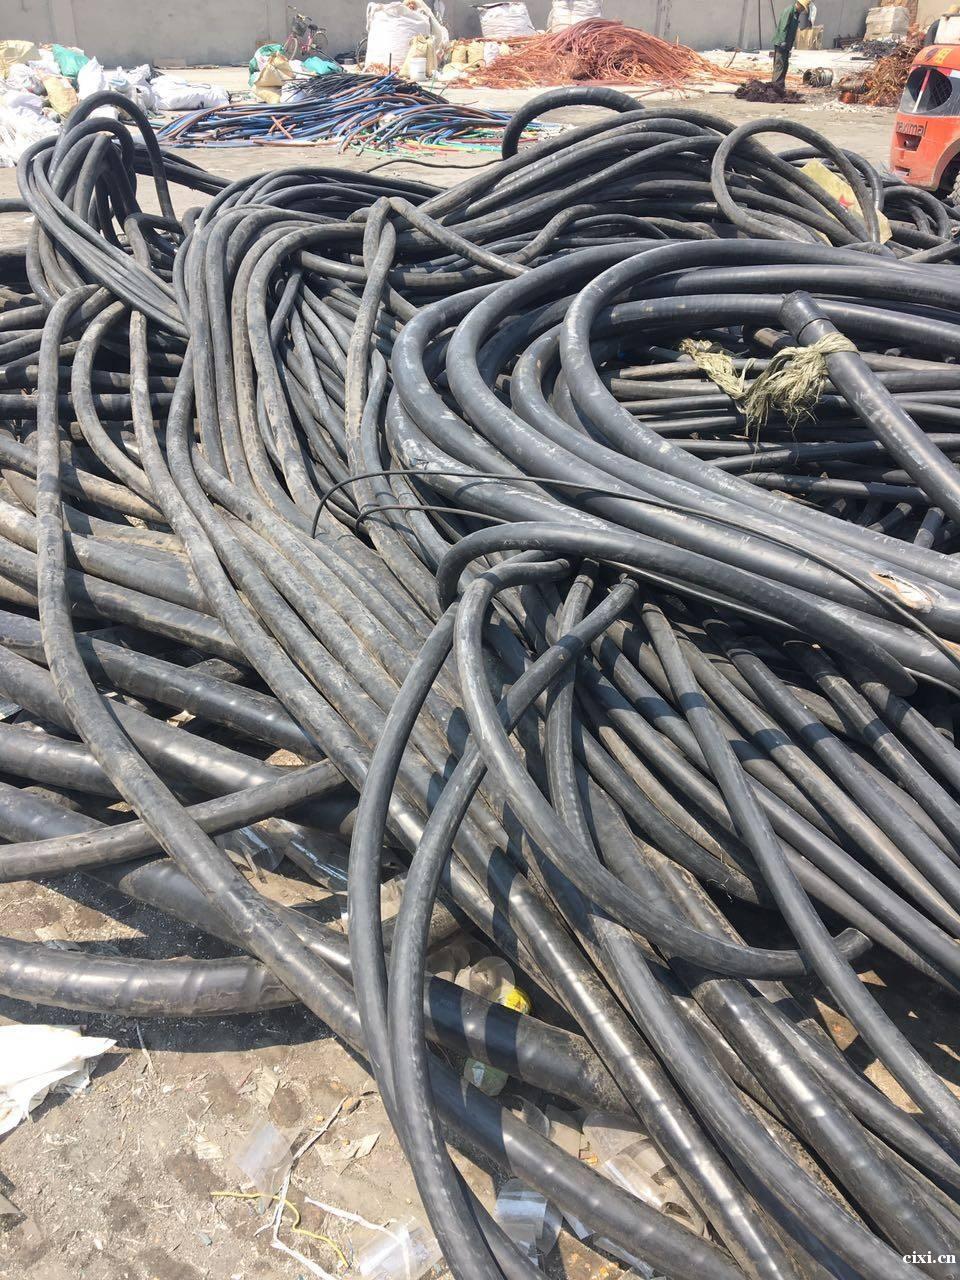 杭州湾新区废旧电缆线回收。专业回收公司闲置电线电缆.